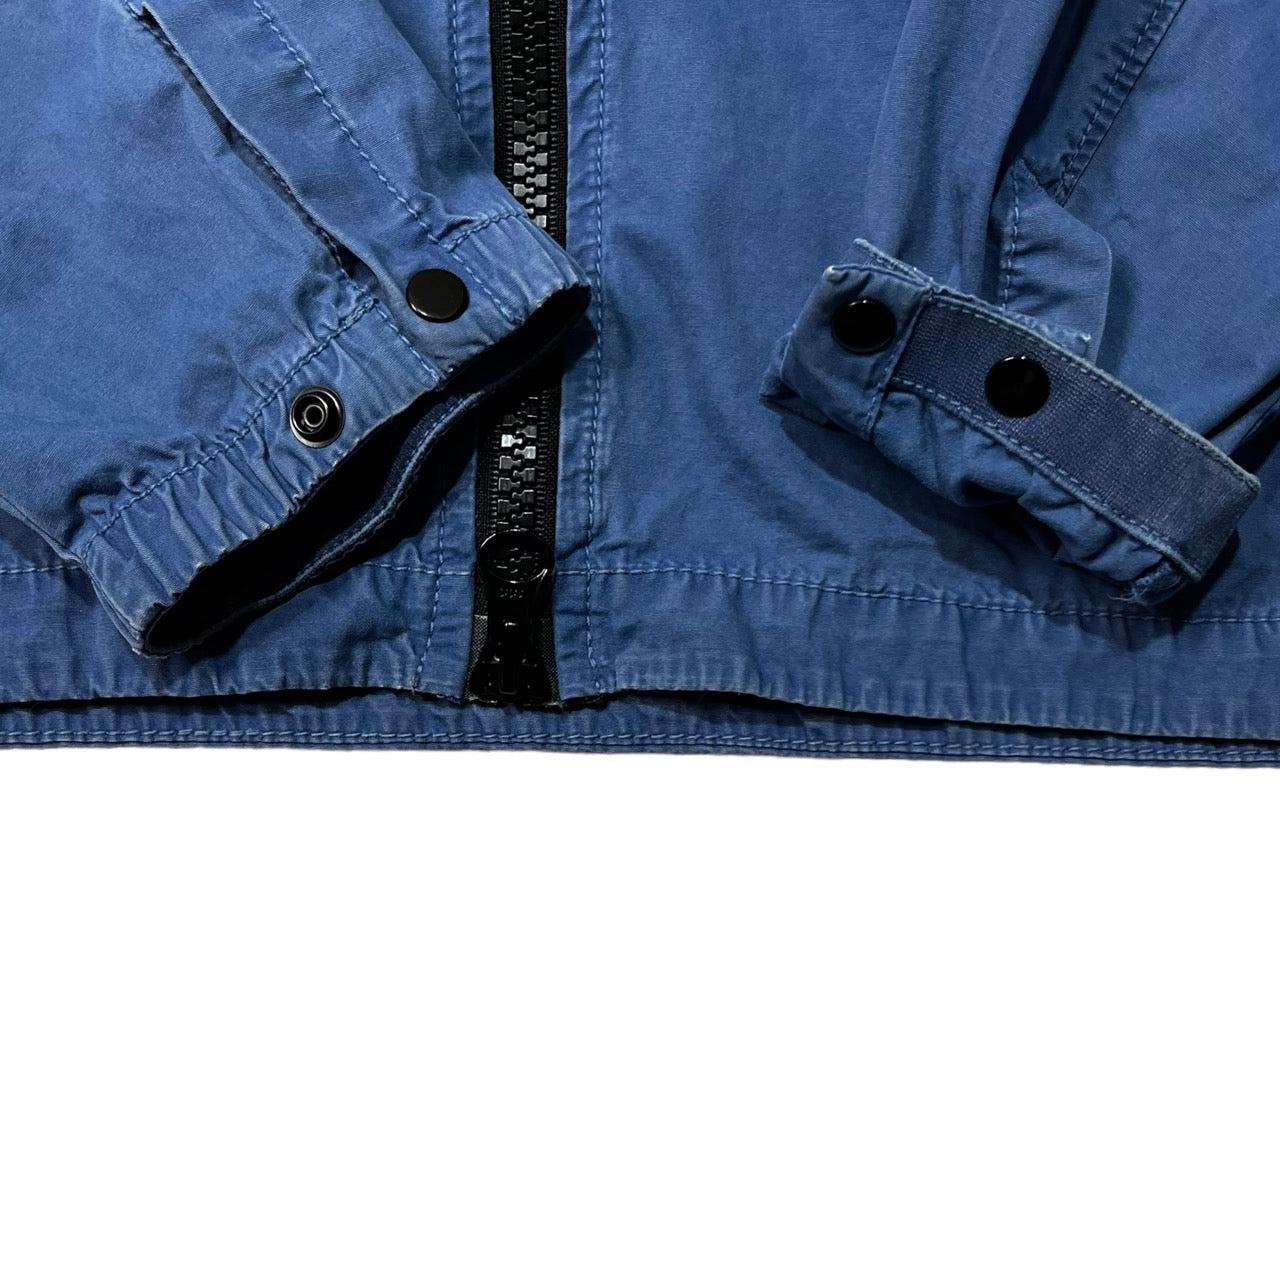 STONE ISLAND(ストーンアイランド) 20AW garment-dyed zip-up jacket ガーメントダイ ジップアップ ジャケット 7315107WN SIZE L ブルー